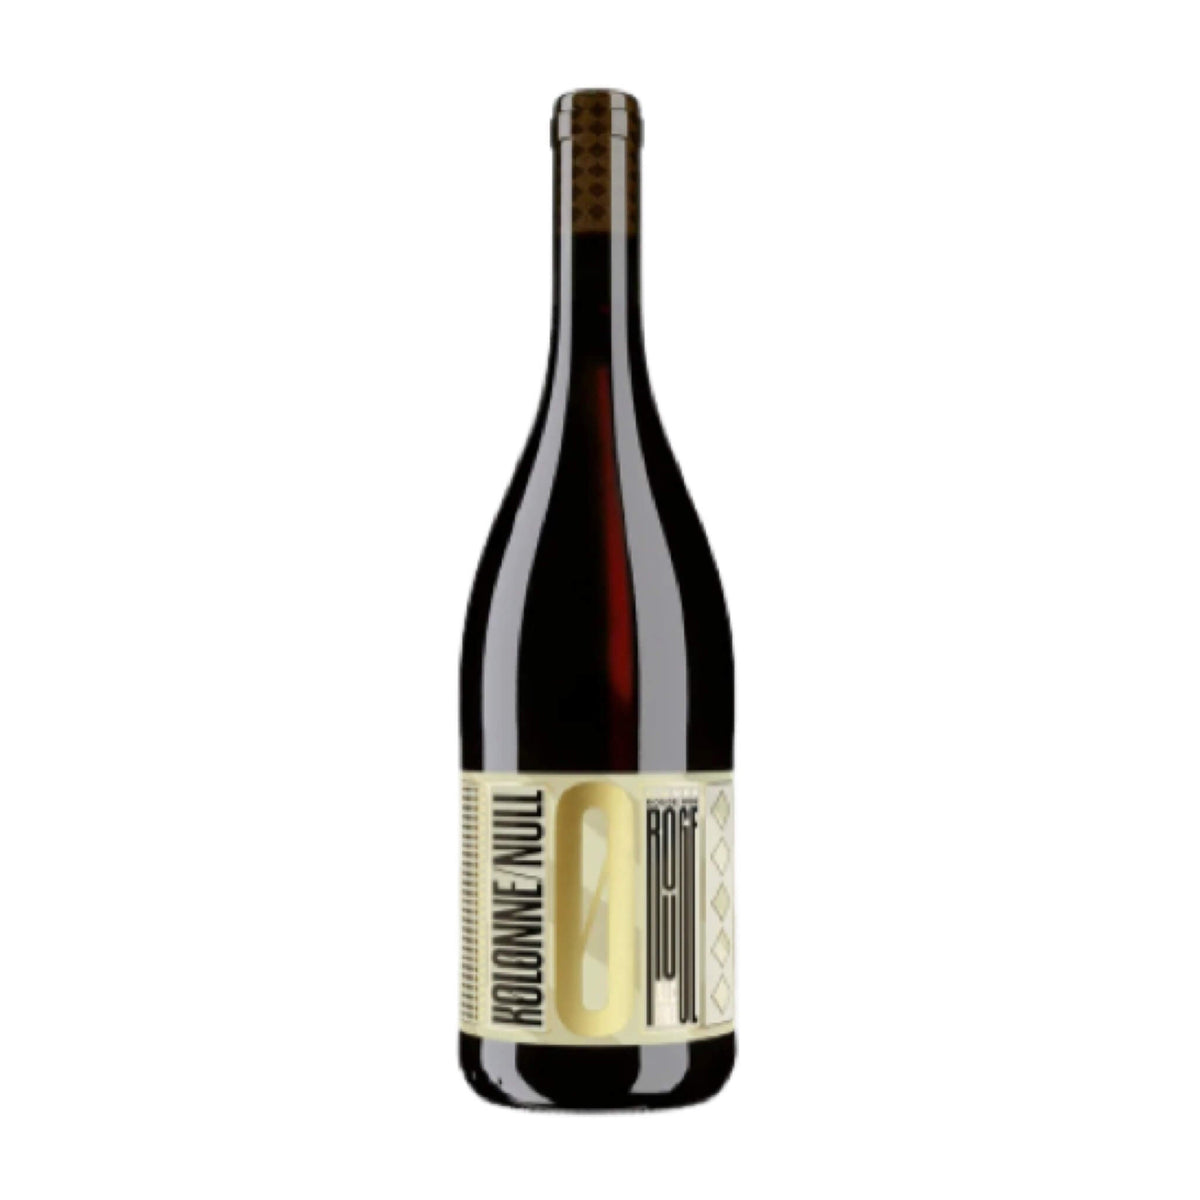 Kolonne Null-Alkoholfrei-Cabernet Franc, Merlot, Cabernet Sauvignon-Cuvée Rouge N0.02 Edition Mas Que Vinos-WINECOM